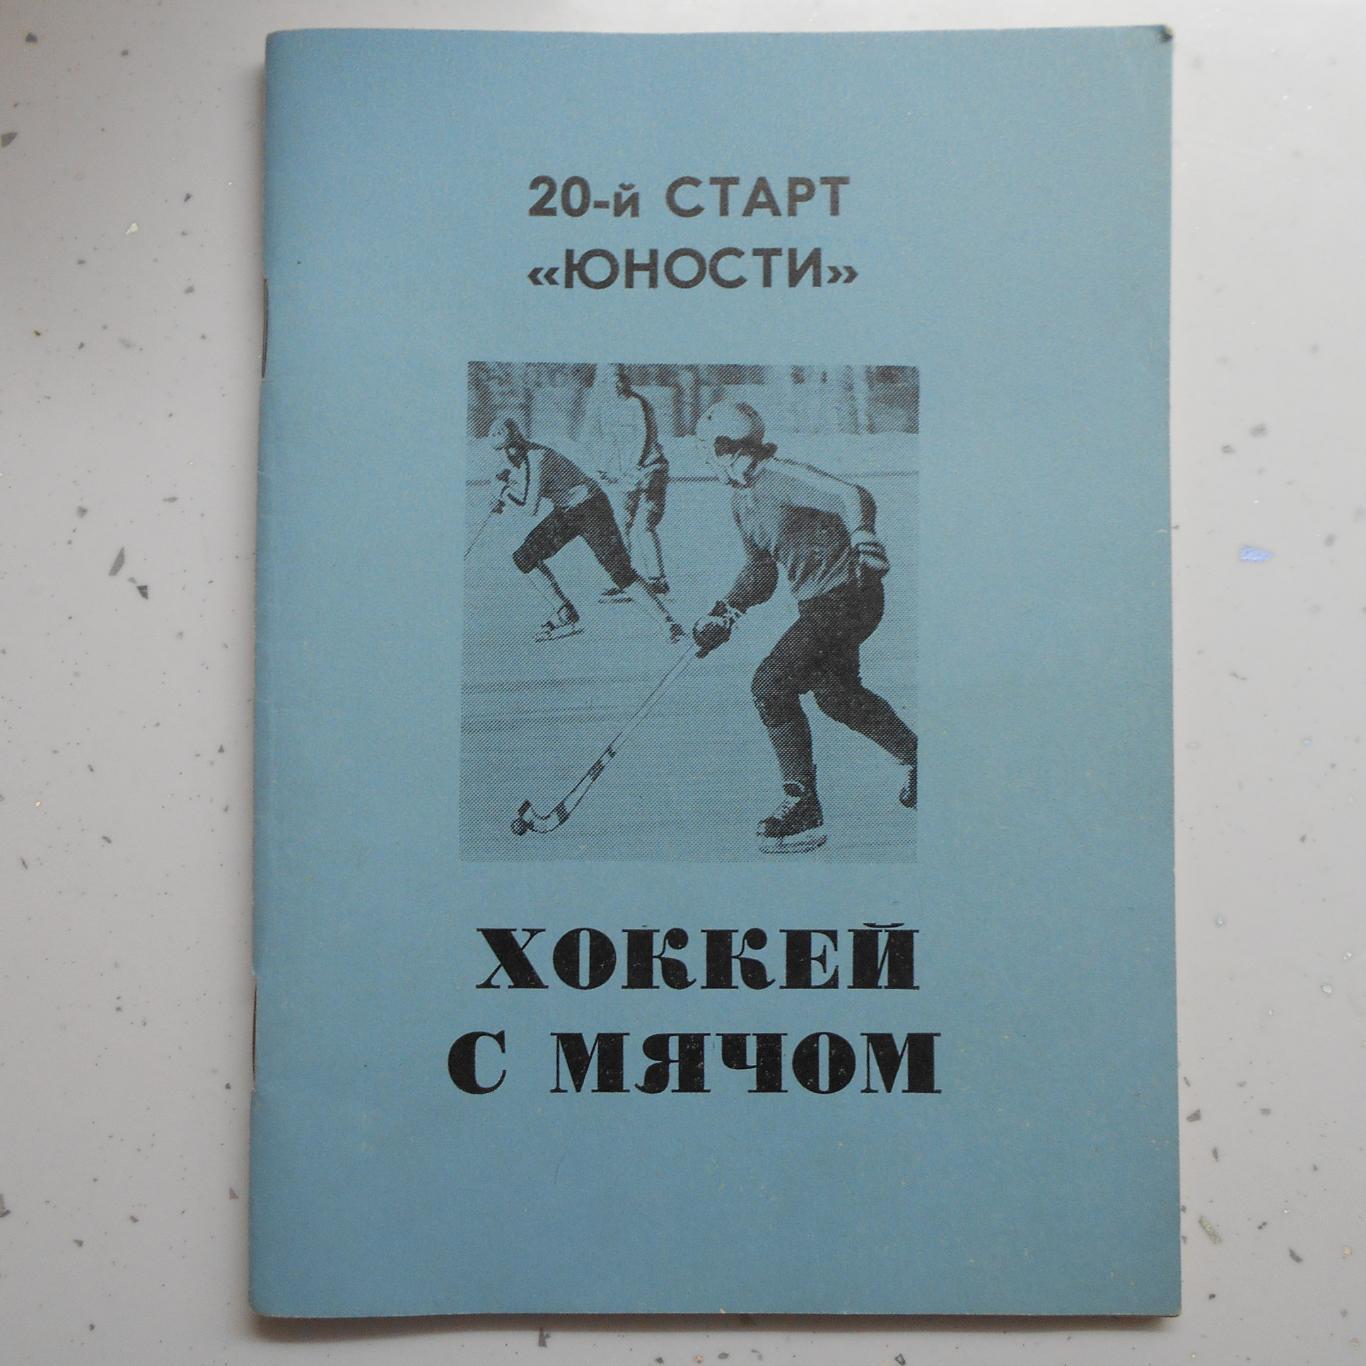 Омск 1988-1989 календарь справочник хоккей с мячом